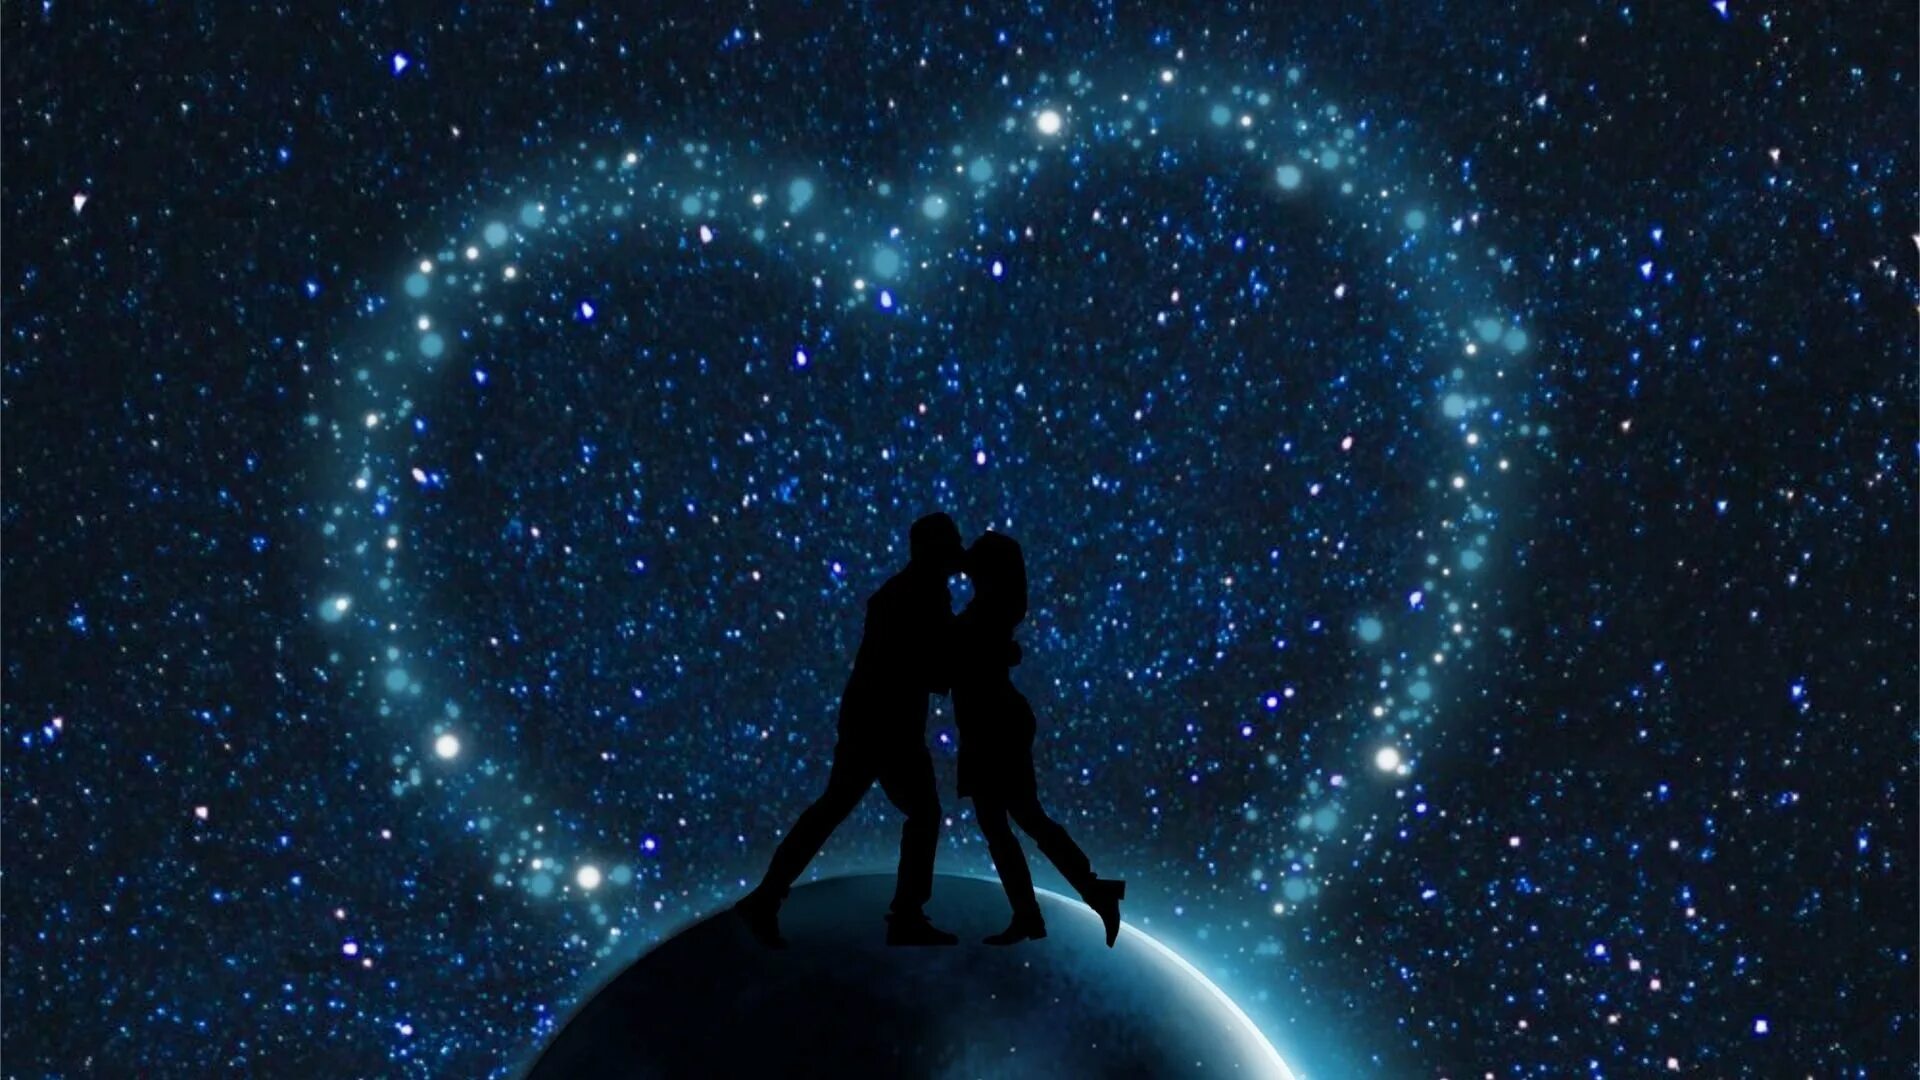 Любовь со звезд 9. Двое под звездами. Космос любовь. Пара на фоне звездного неба. Вселенная и любовь.